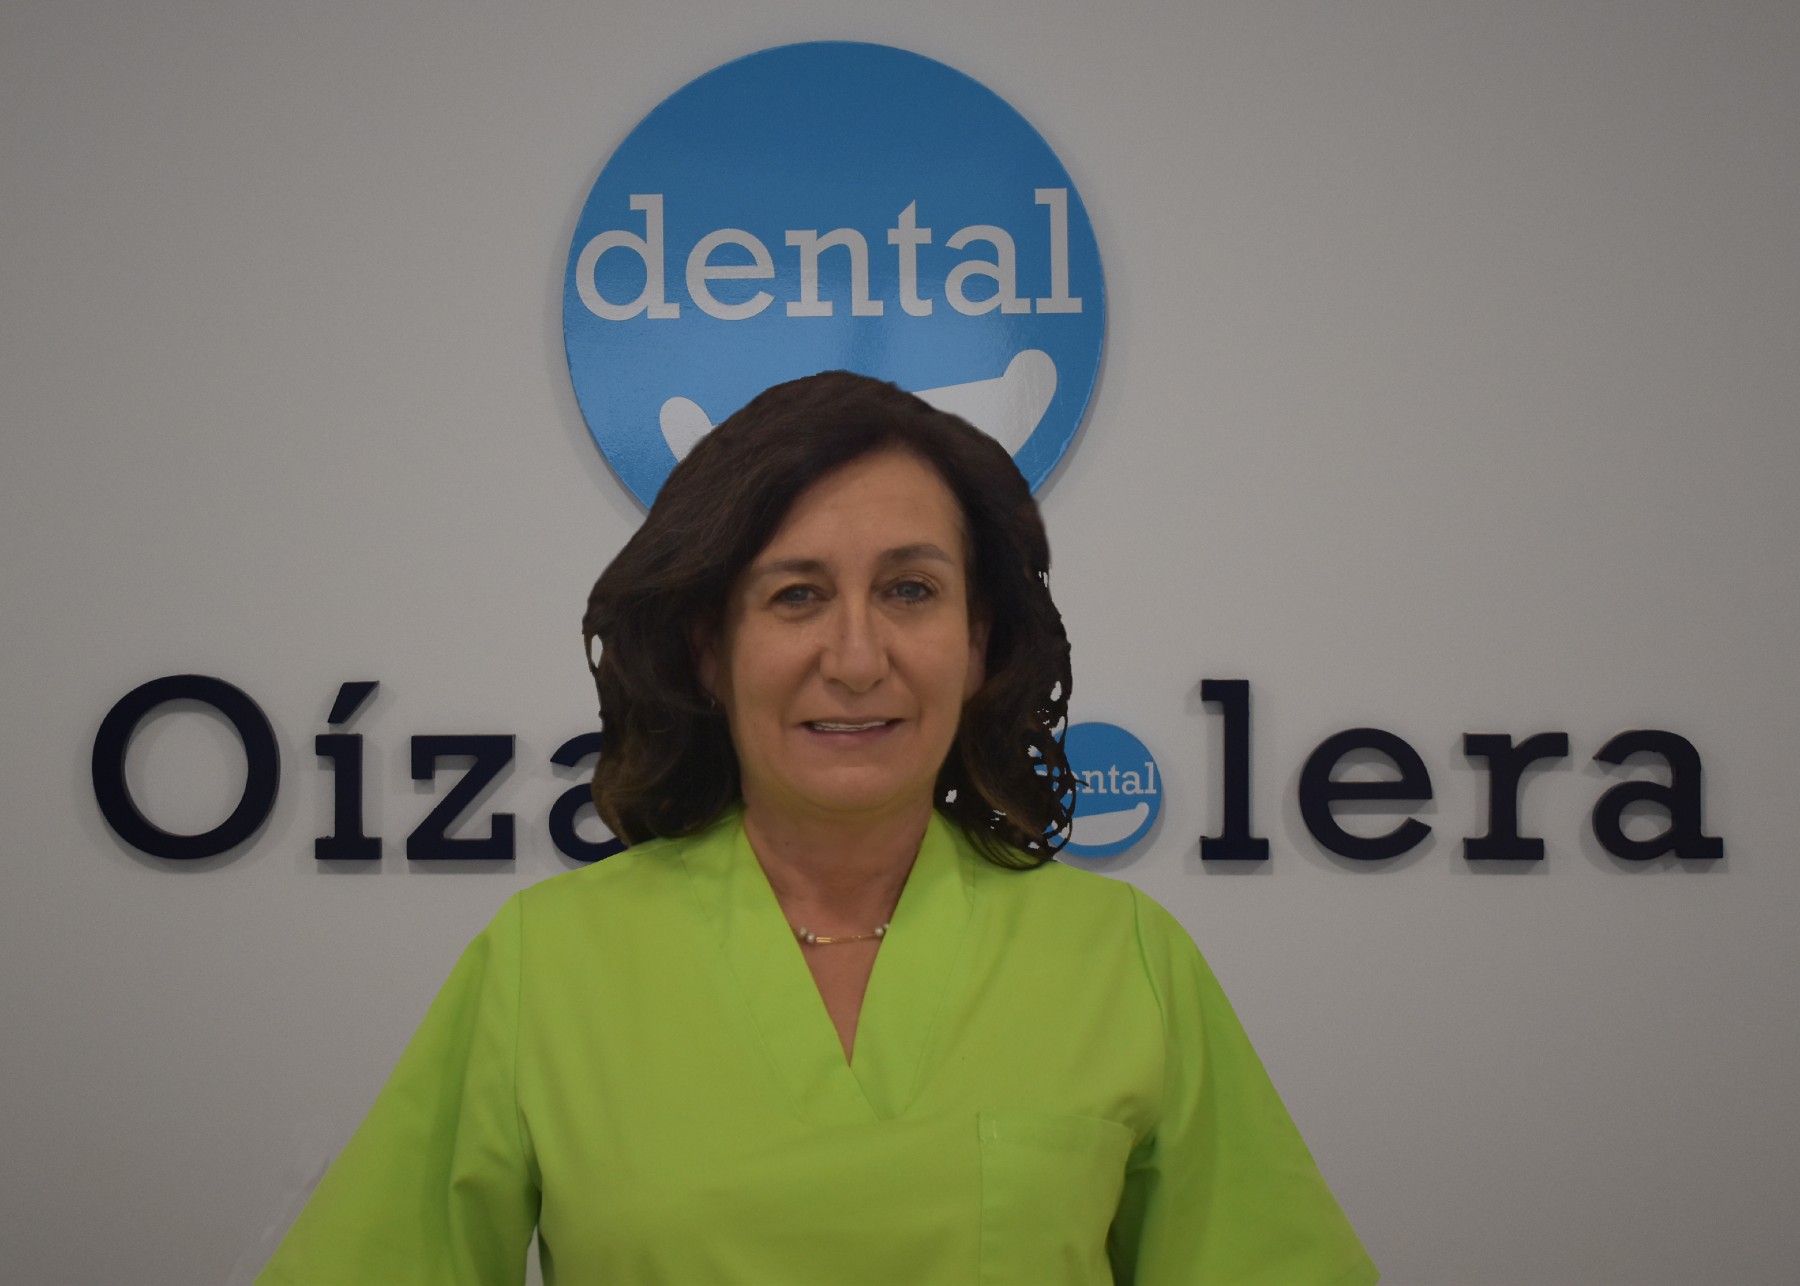 Pilar de la Clínica Dental Oíza-Colera